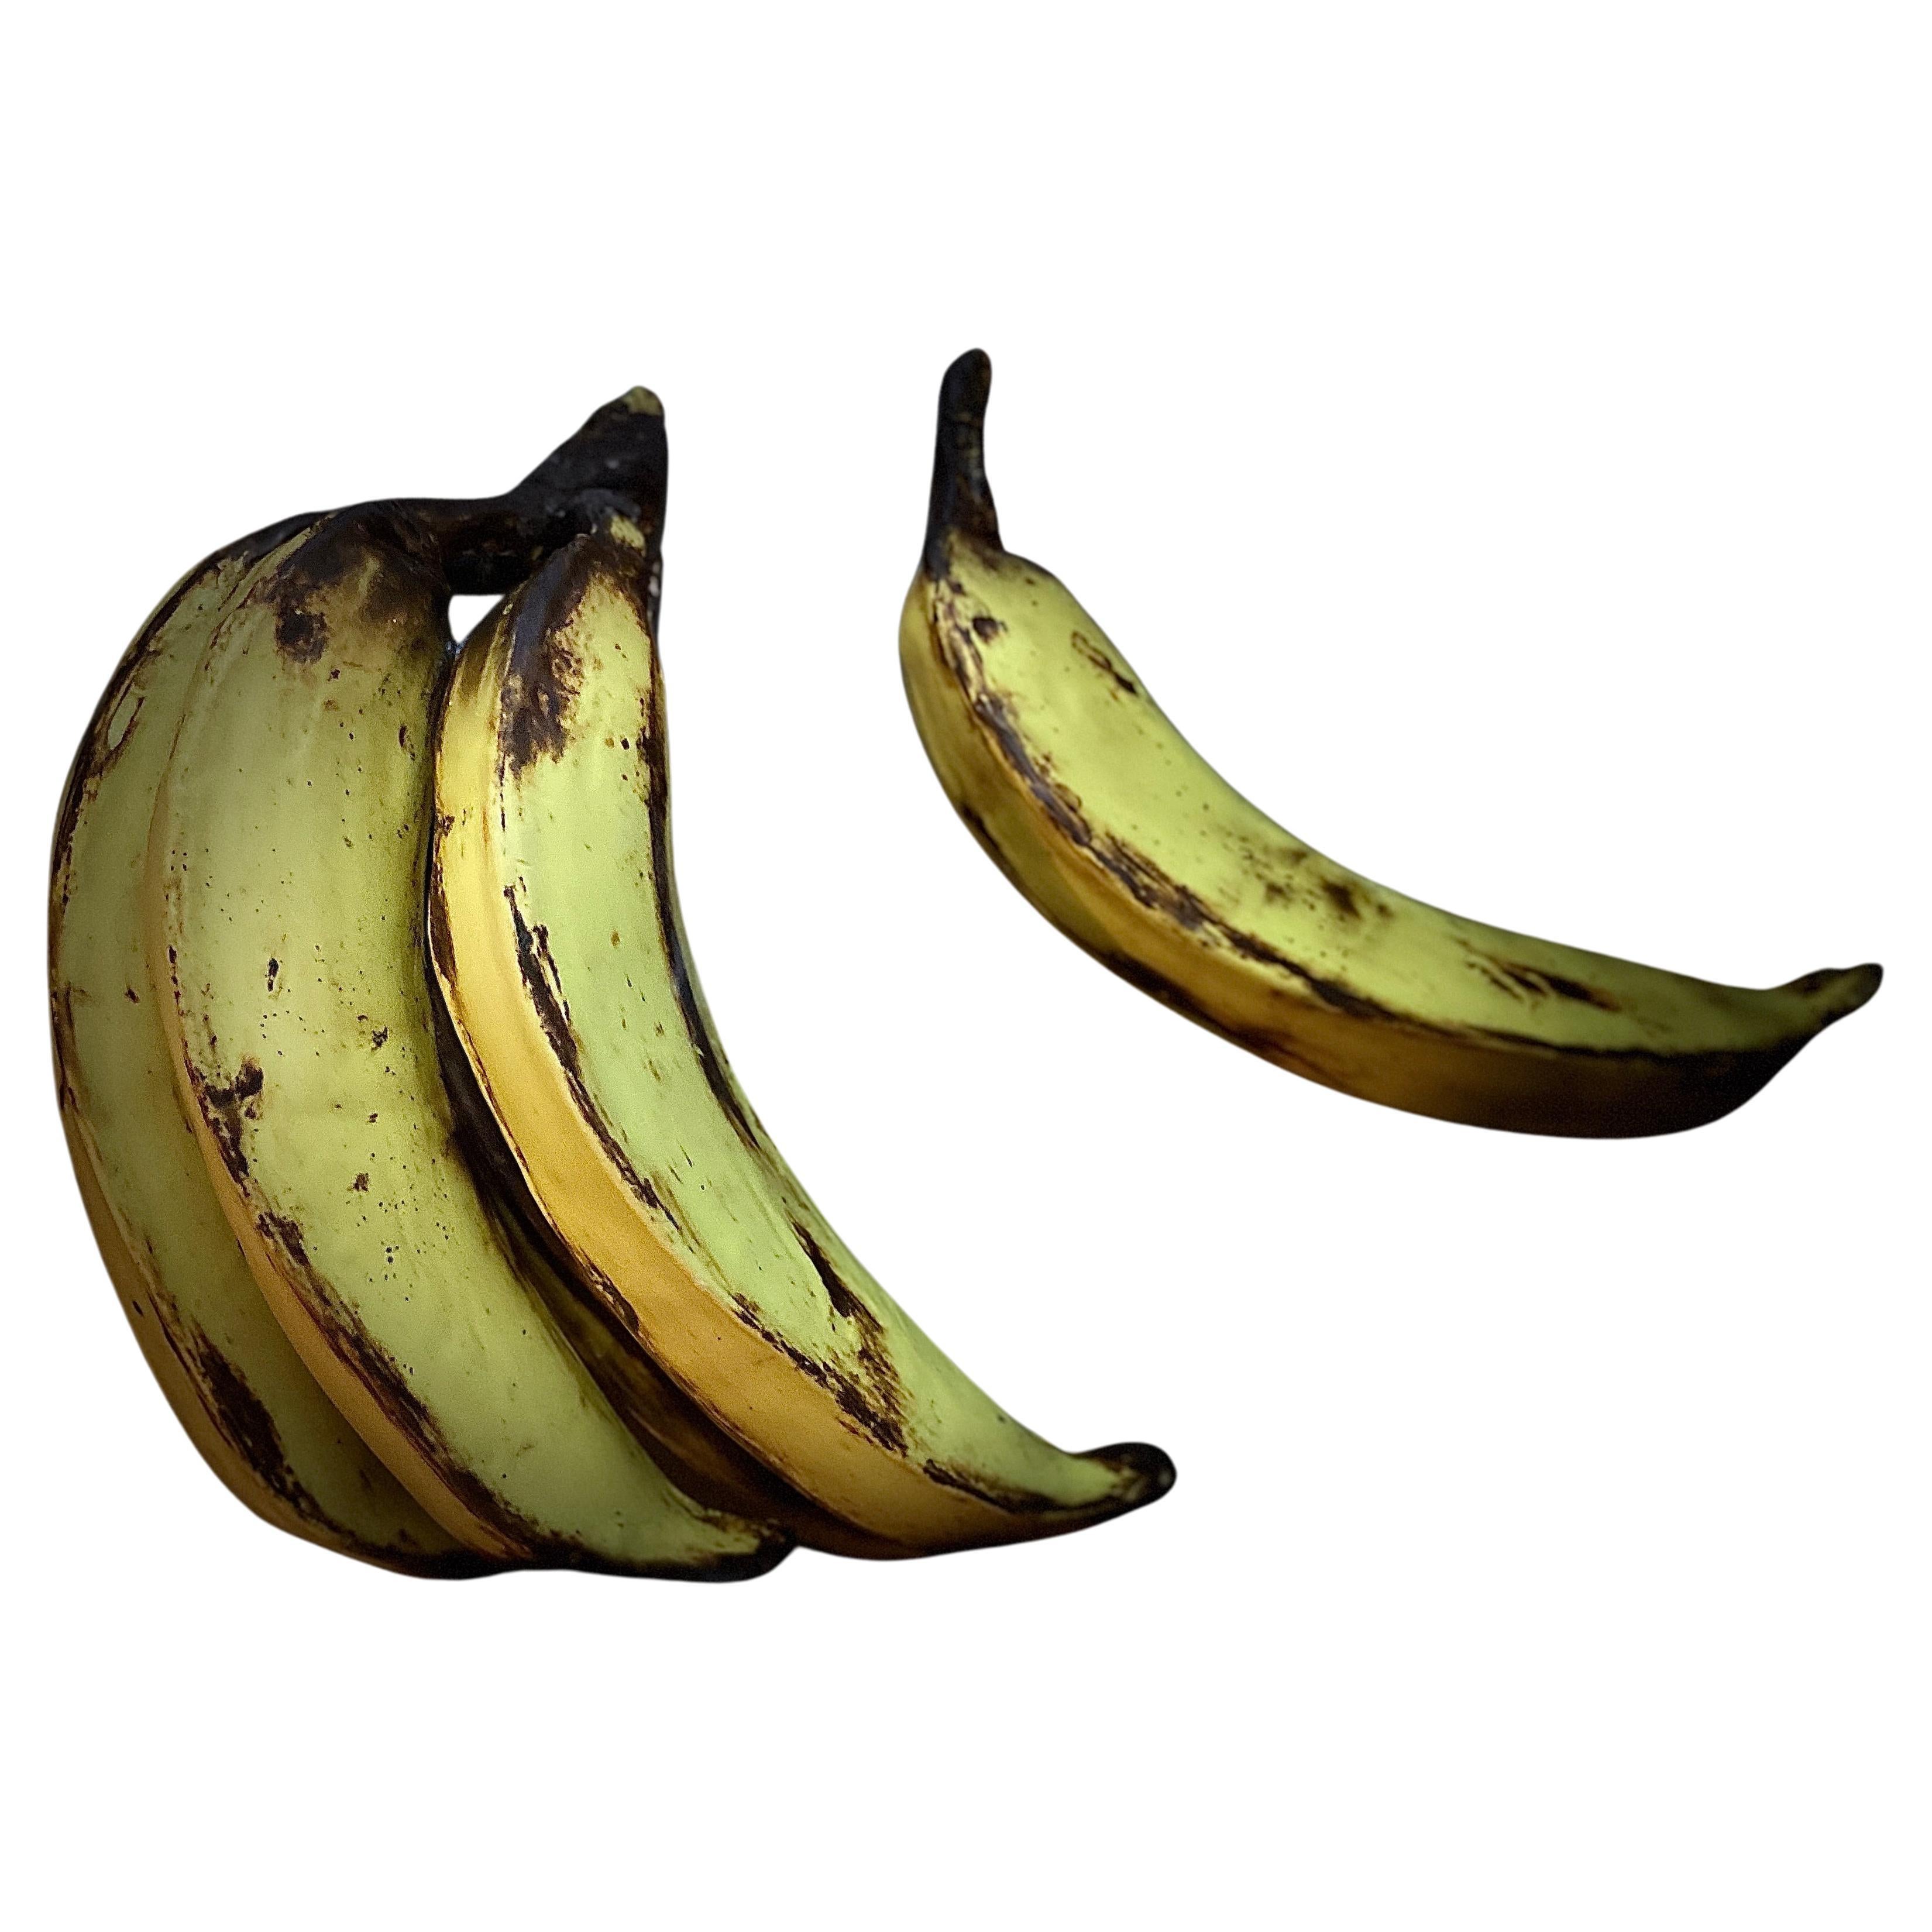 Big Bananas For Sale